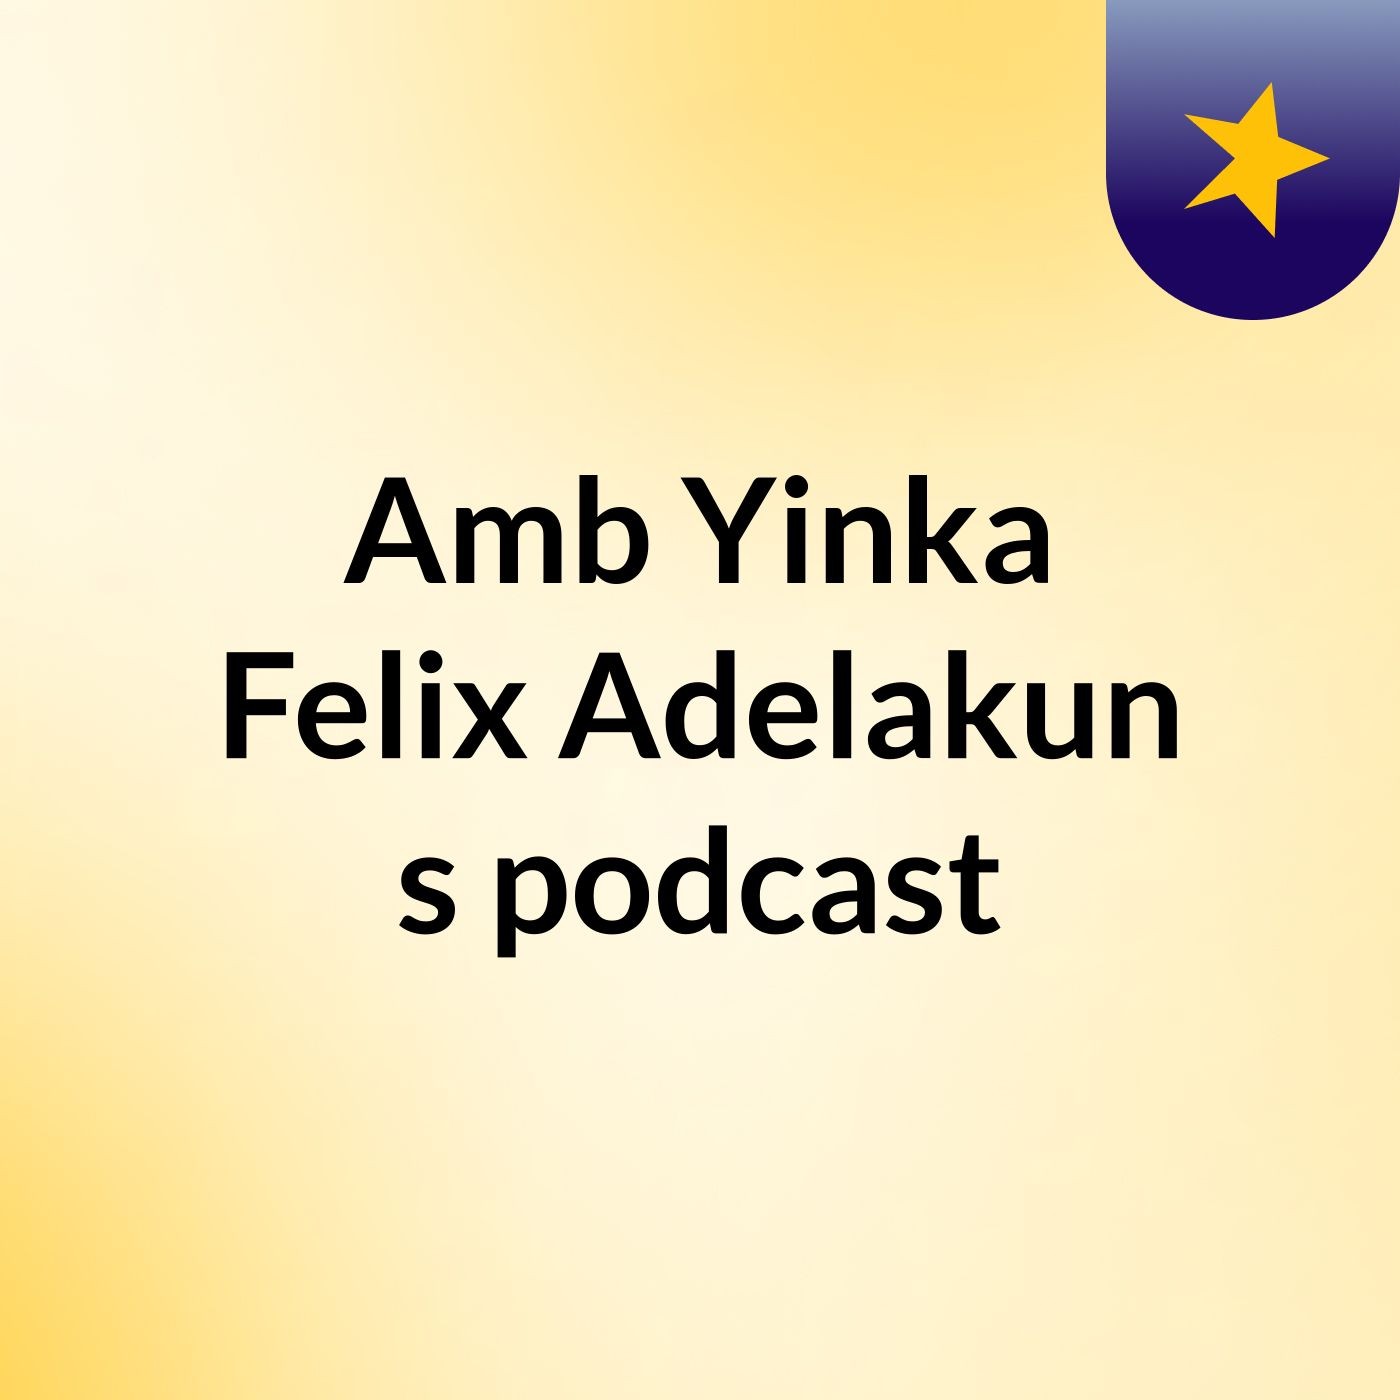 Amb Yinka Felix Adelakun's podcast